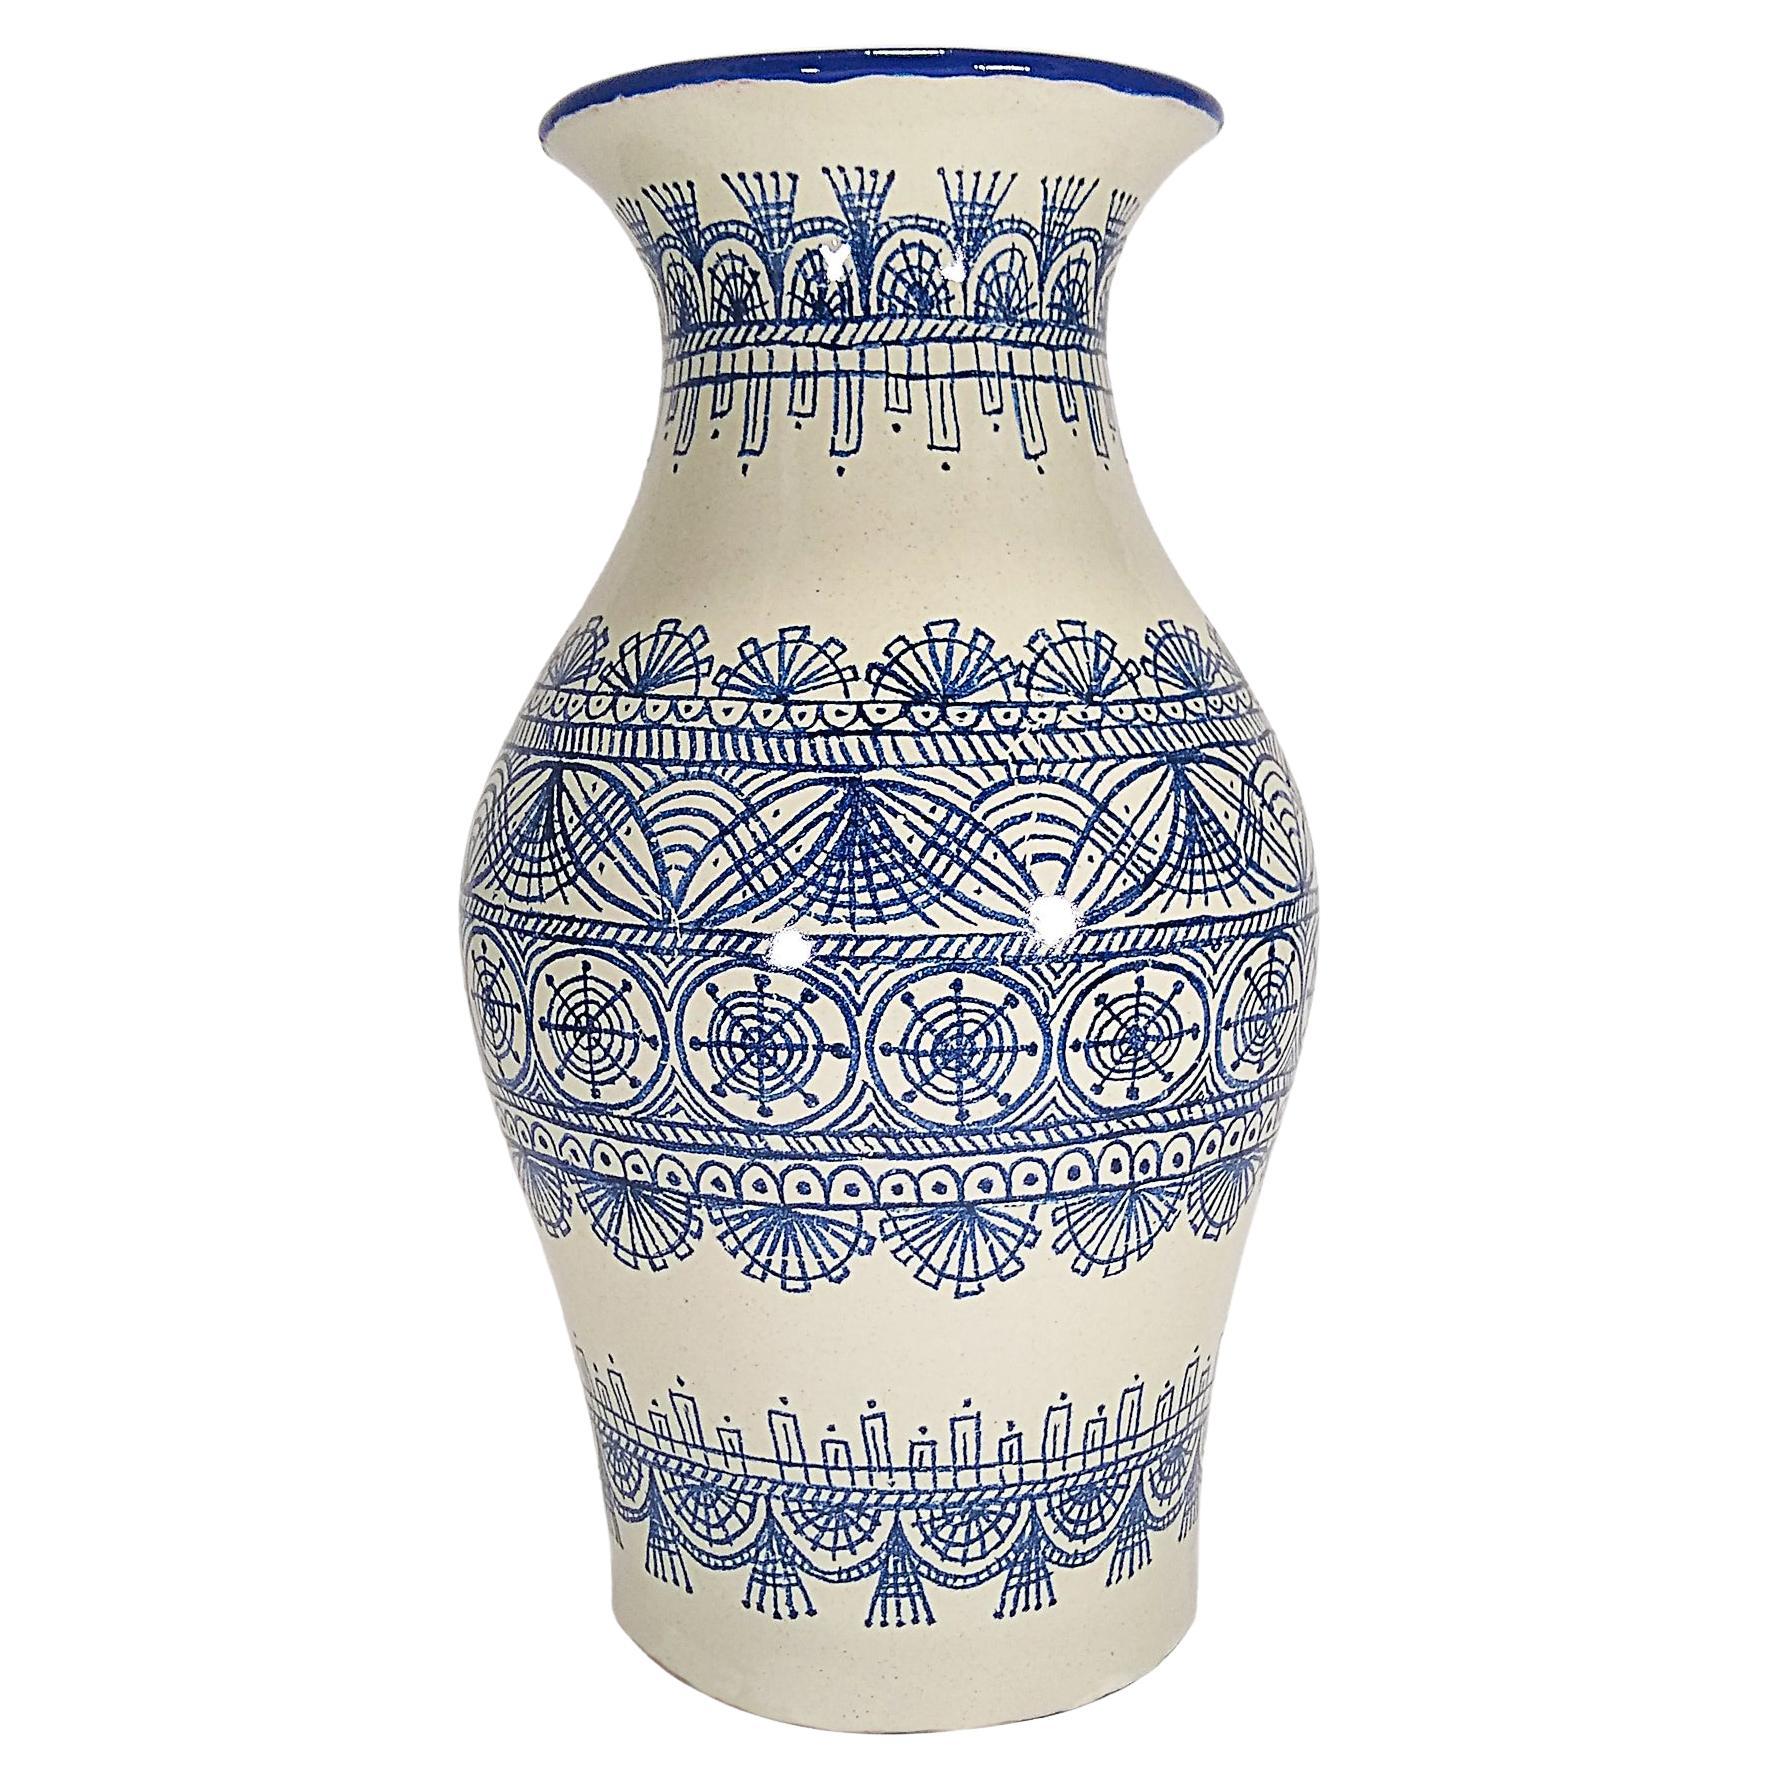 Authentische Talavera-Deko-Vase, Volkskunstgefäß, mexikanische Keramik, blau-weiß